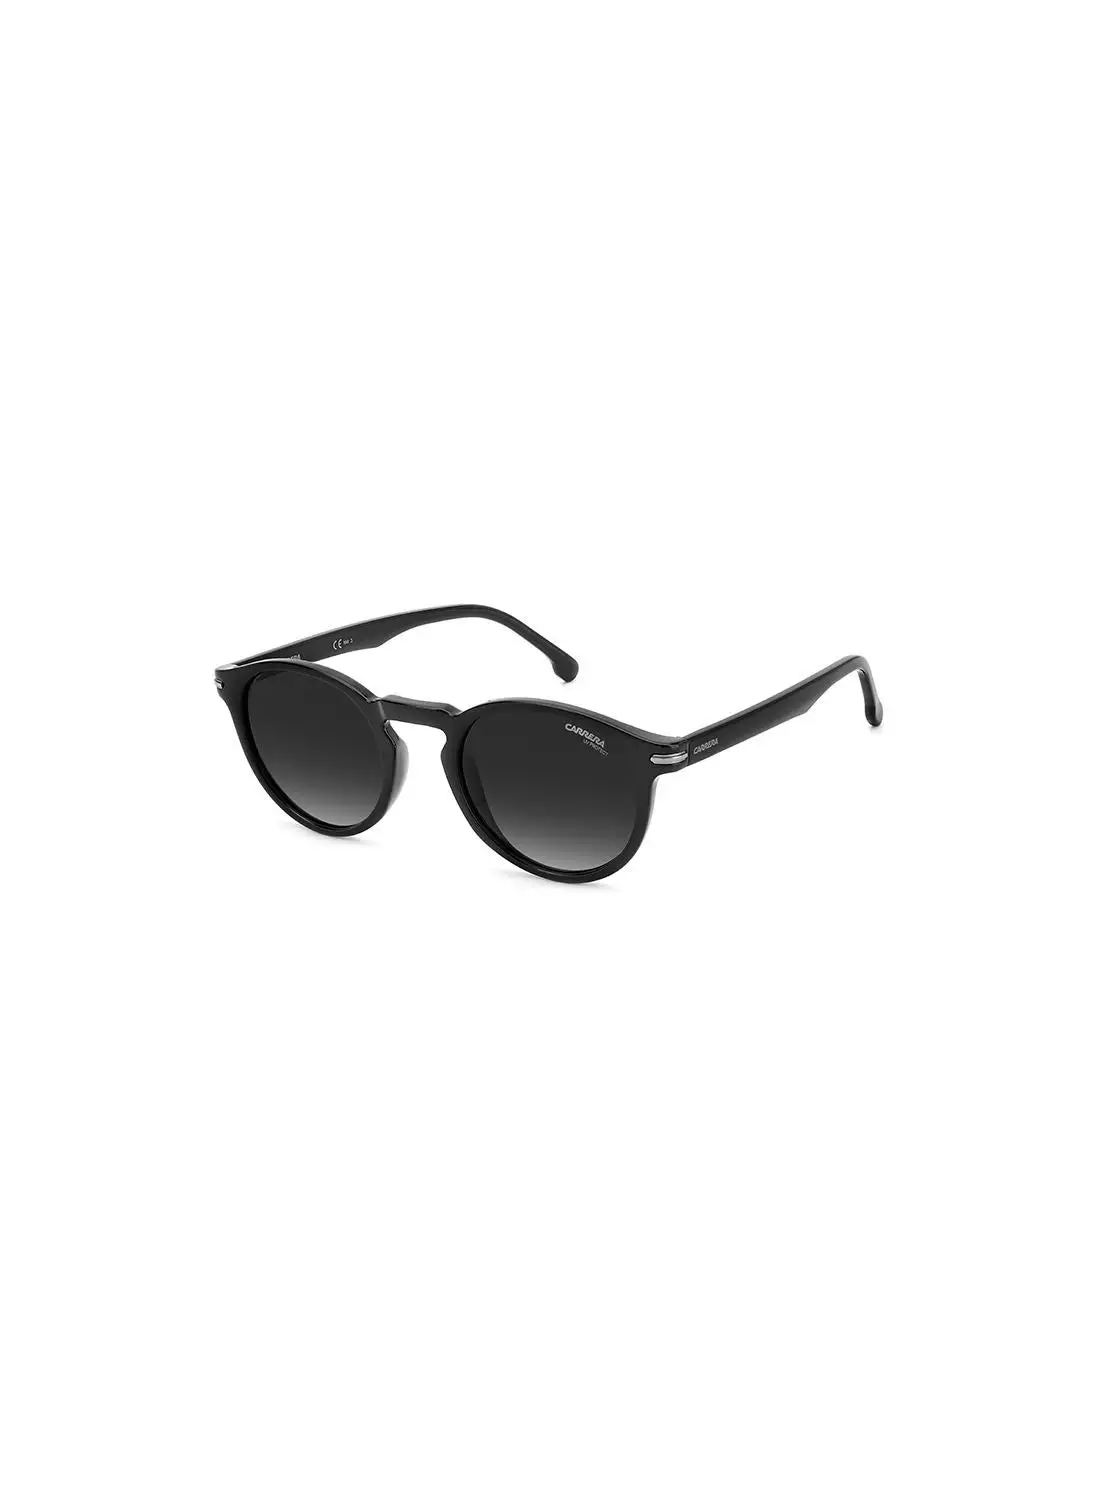 كاريرا نظارة شمسية دائرية للحماية من الأشعة فوق البنفسجية للجنسين - Carrera 301/S Black 50 - مقاس العدسة: 50 ملم